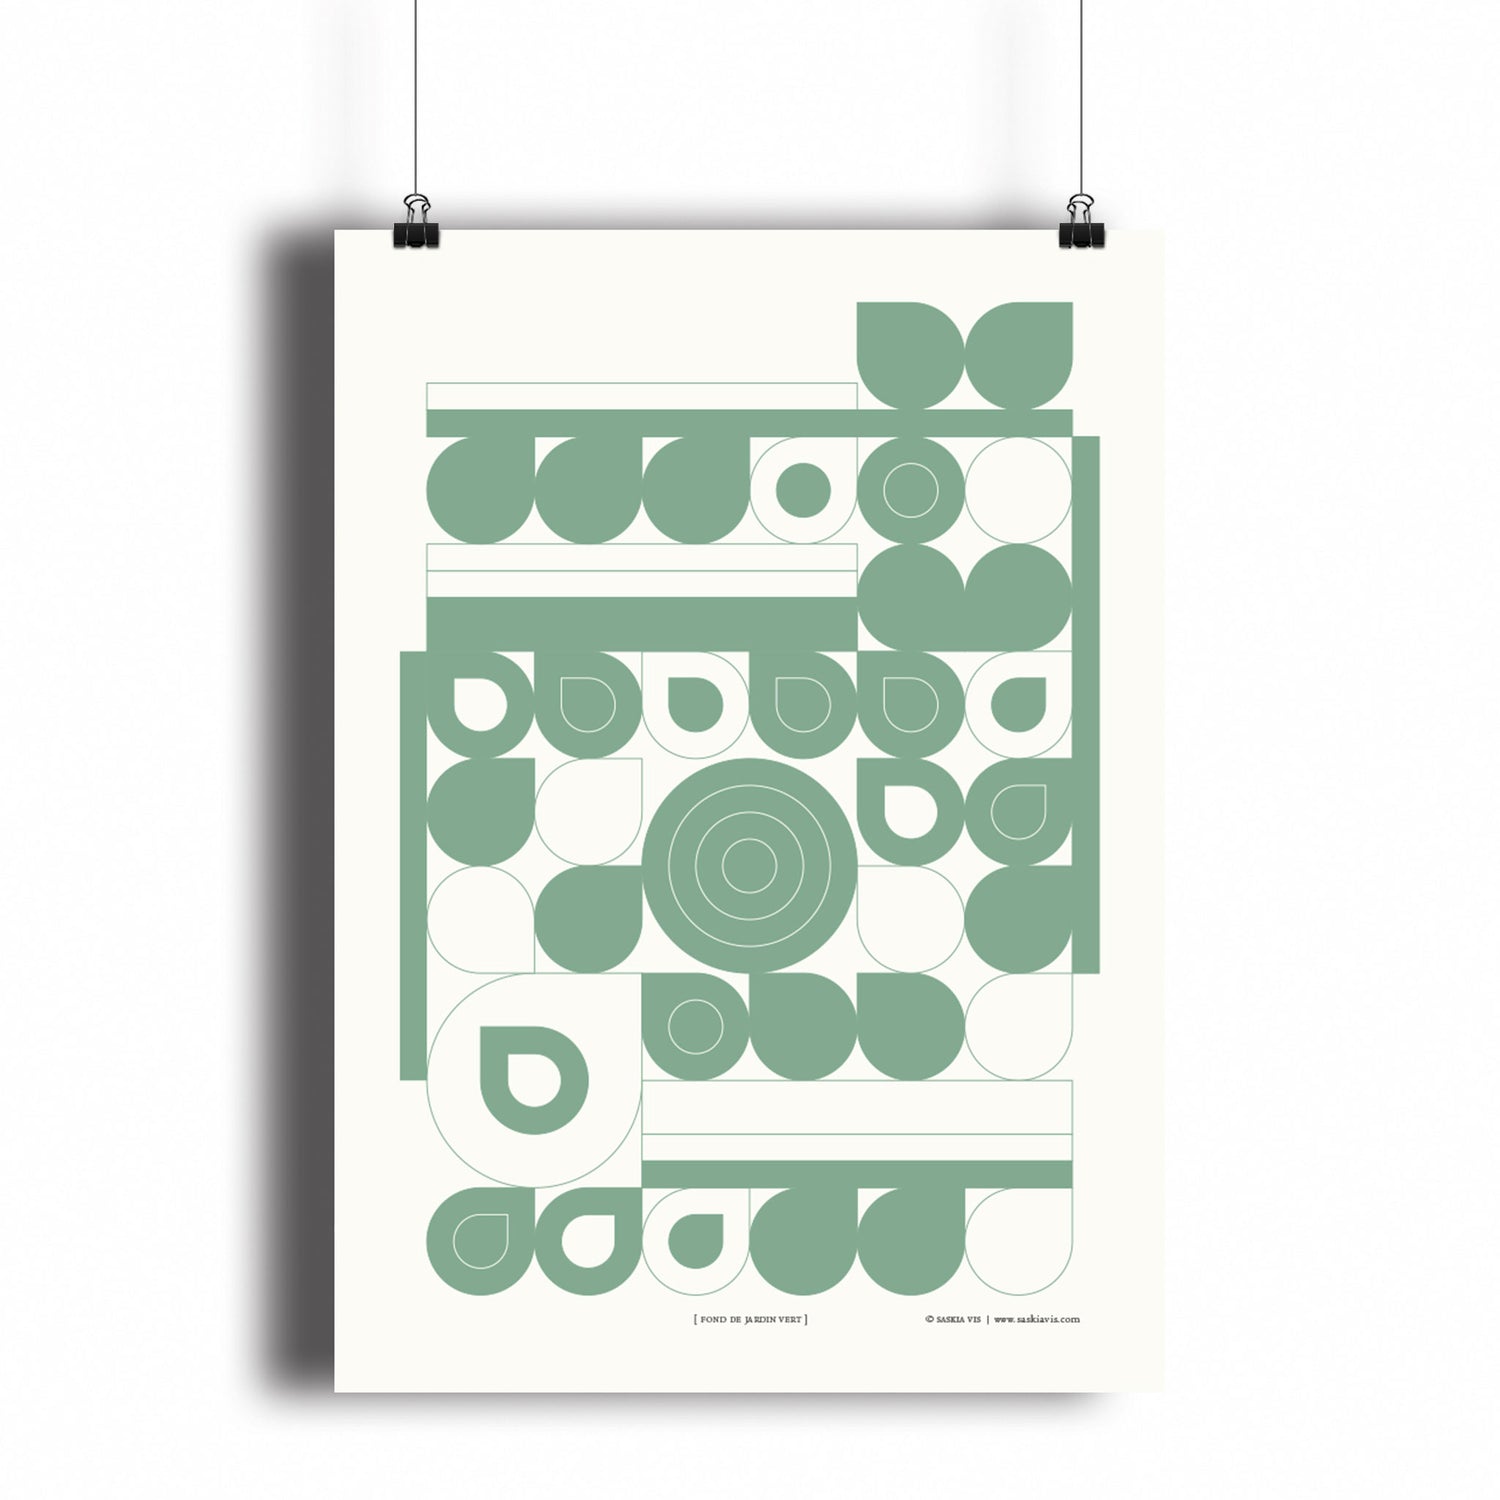 Productafbeelding, poster "fond de jardin vert", hangend aan een witte wand, een overzichtsfoto